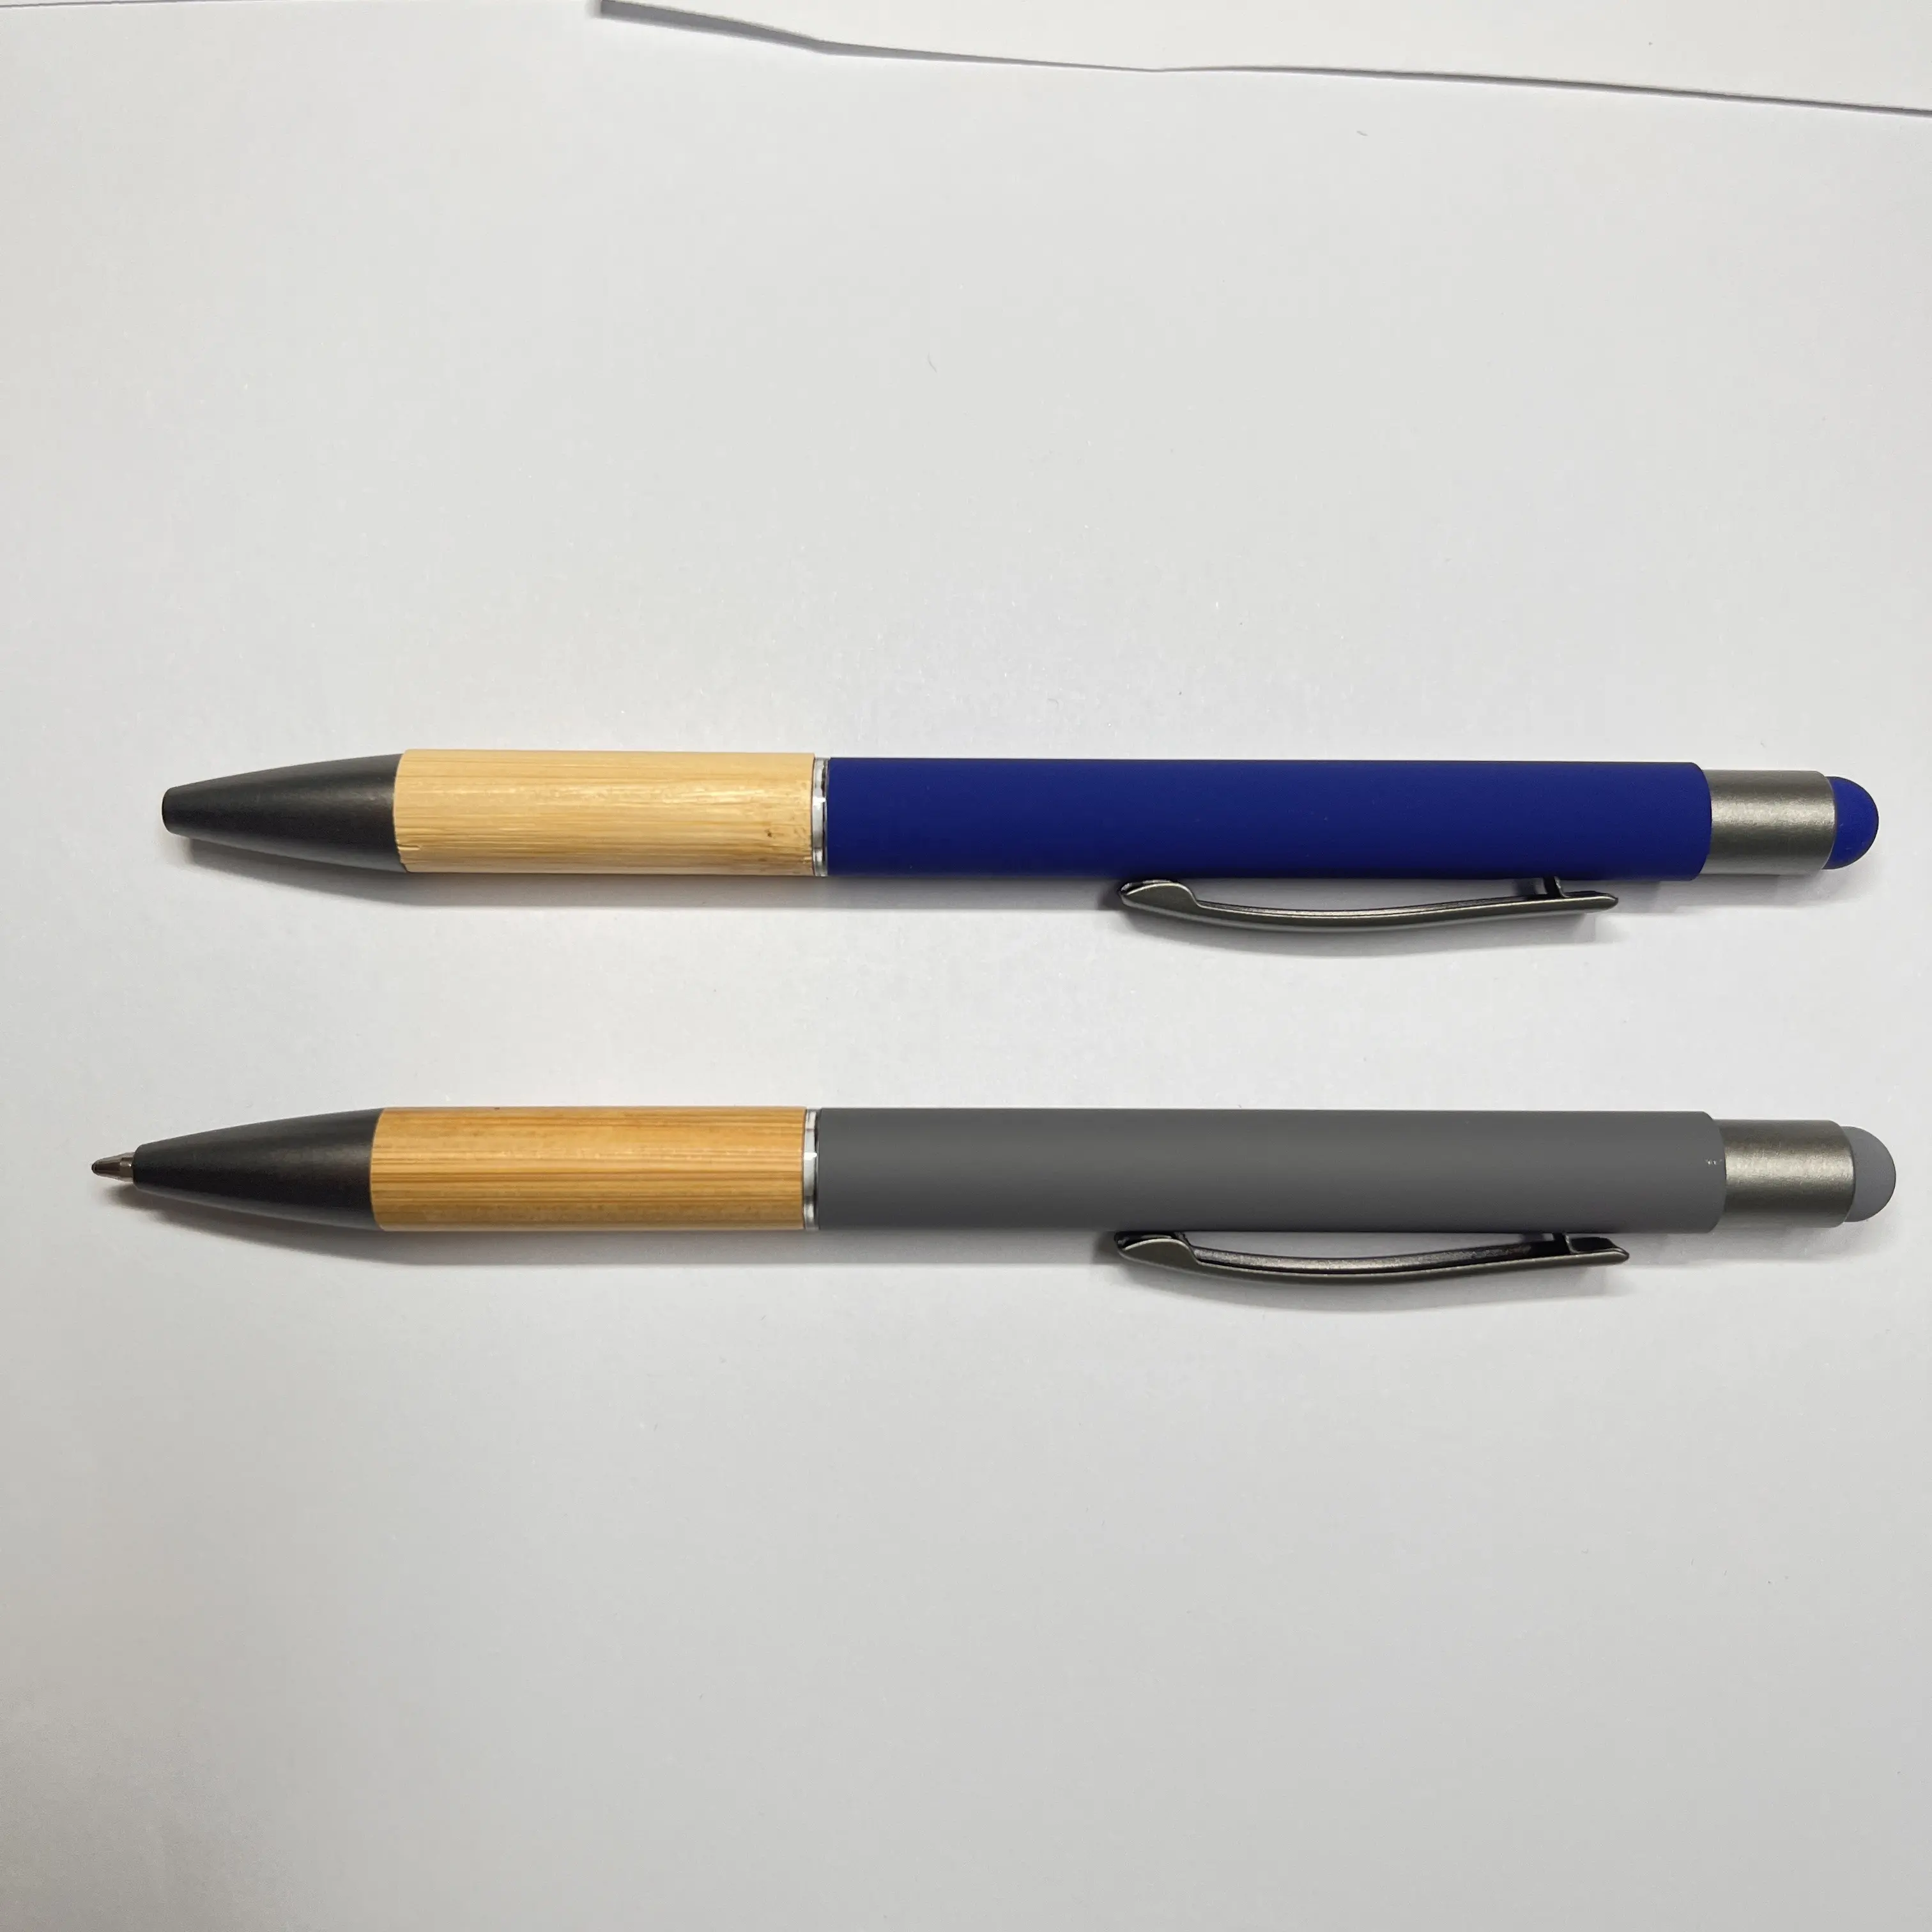 2 in 1 kapasitif bambu yumuşak stylus kauçuk metal kalem bambu özel logo tükenmez yazma kalem